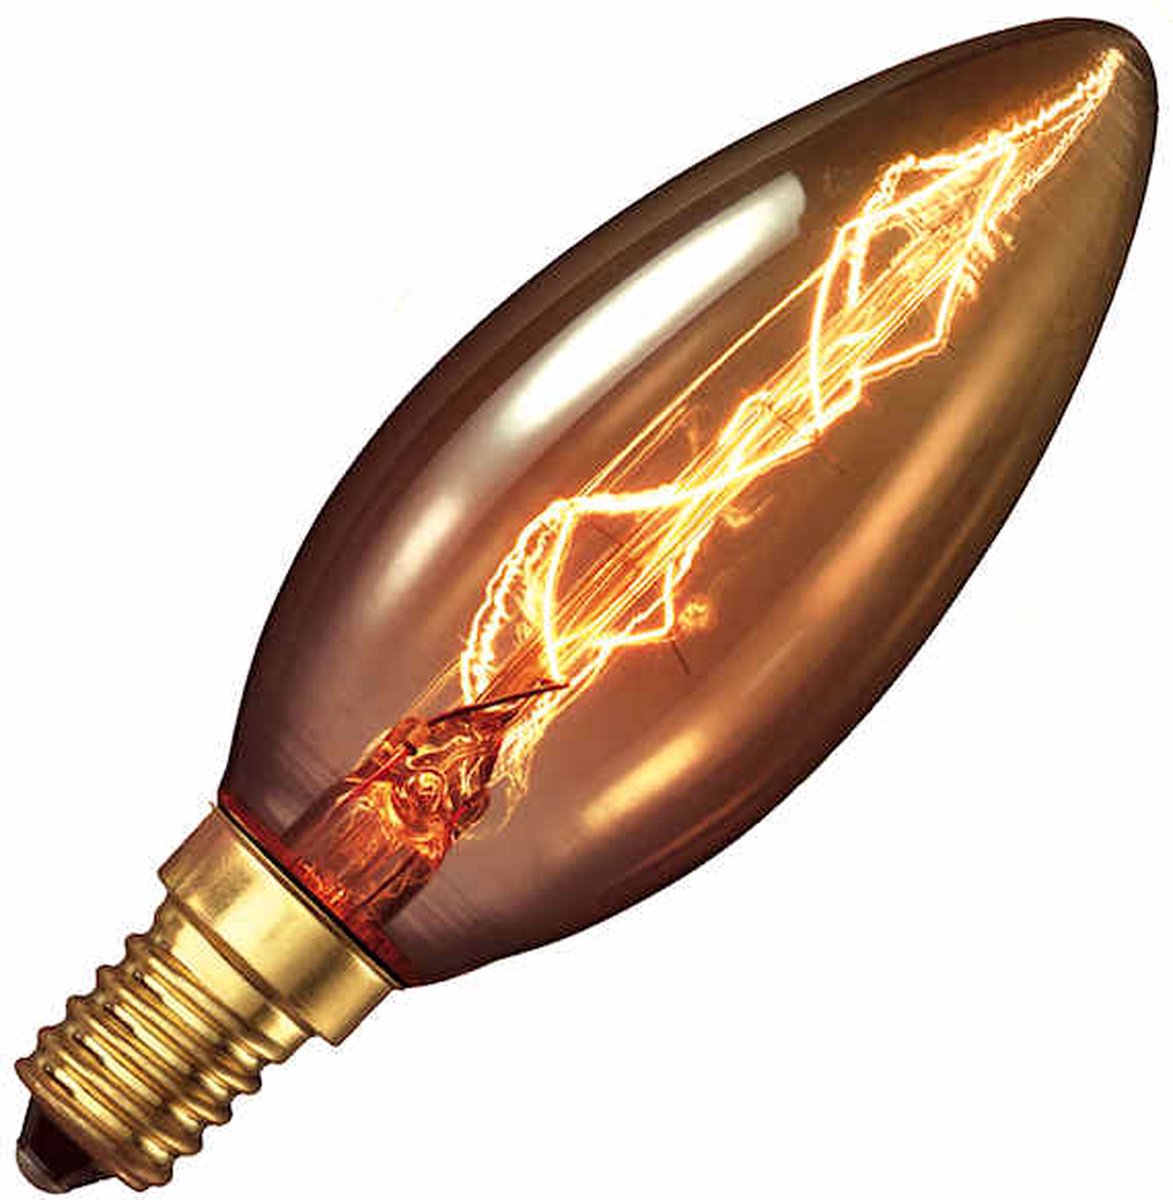 Calex Ampoule LED Vintage Or - 3.5W Source de Lumière Filament - E14 - B35  - Dimmable